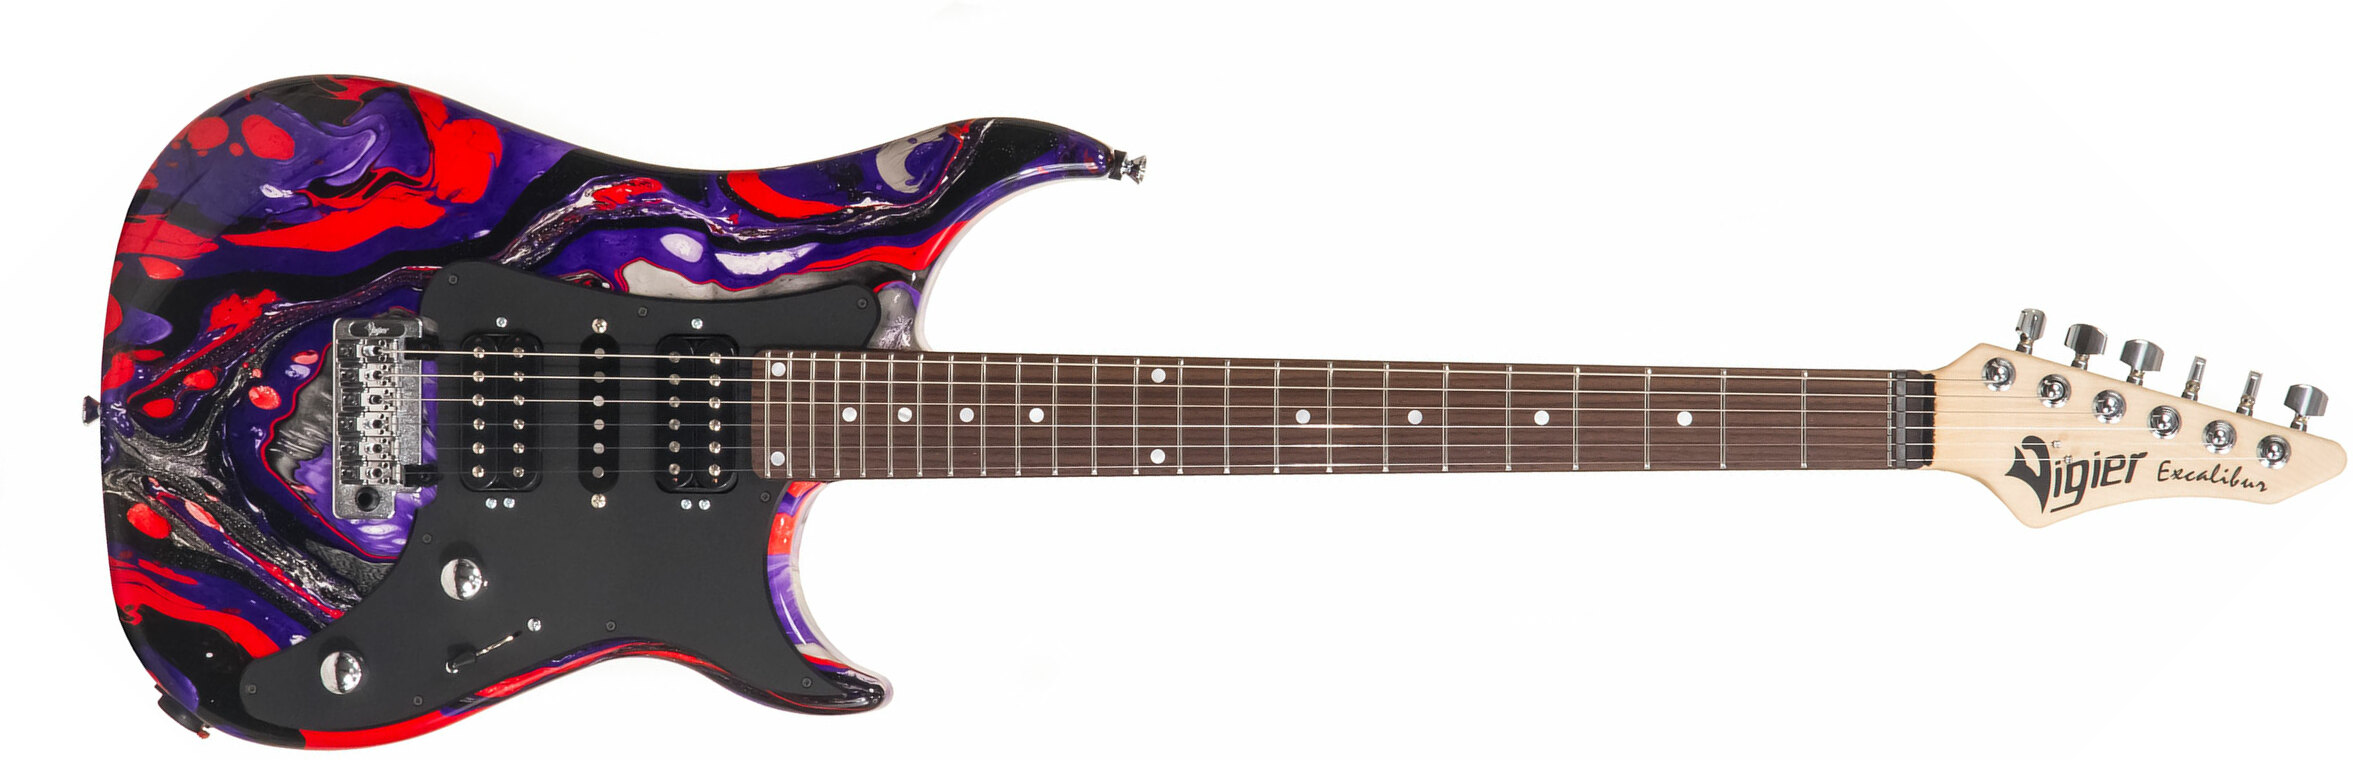 Vigier Excalibur Supraa Hsh Trem Rw - Rock Art Purple Red Black - Guitare Électrique Forme Str - Main picture